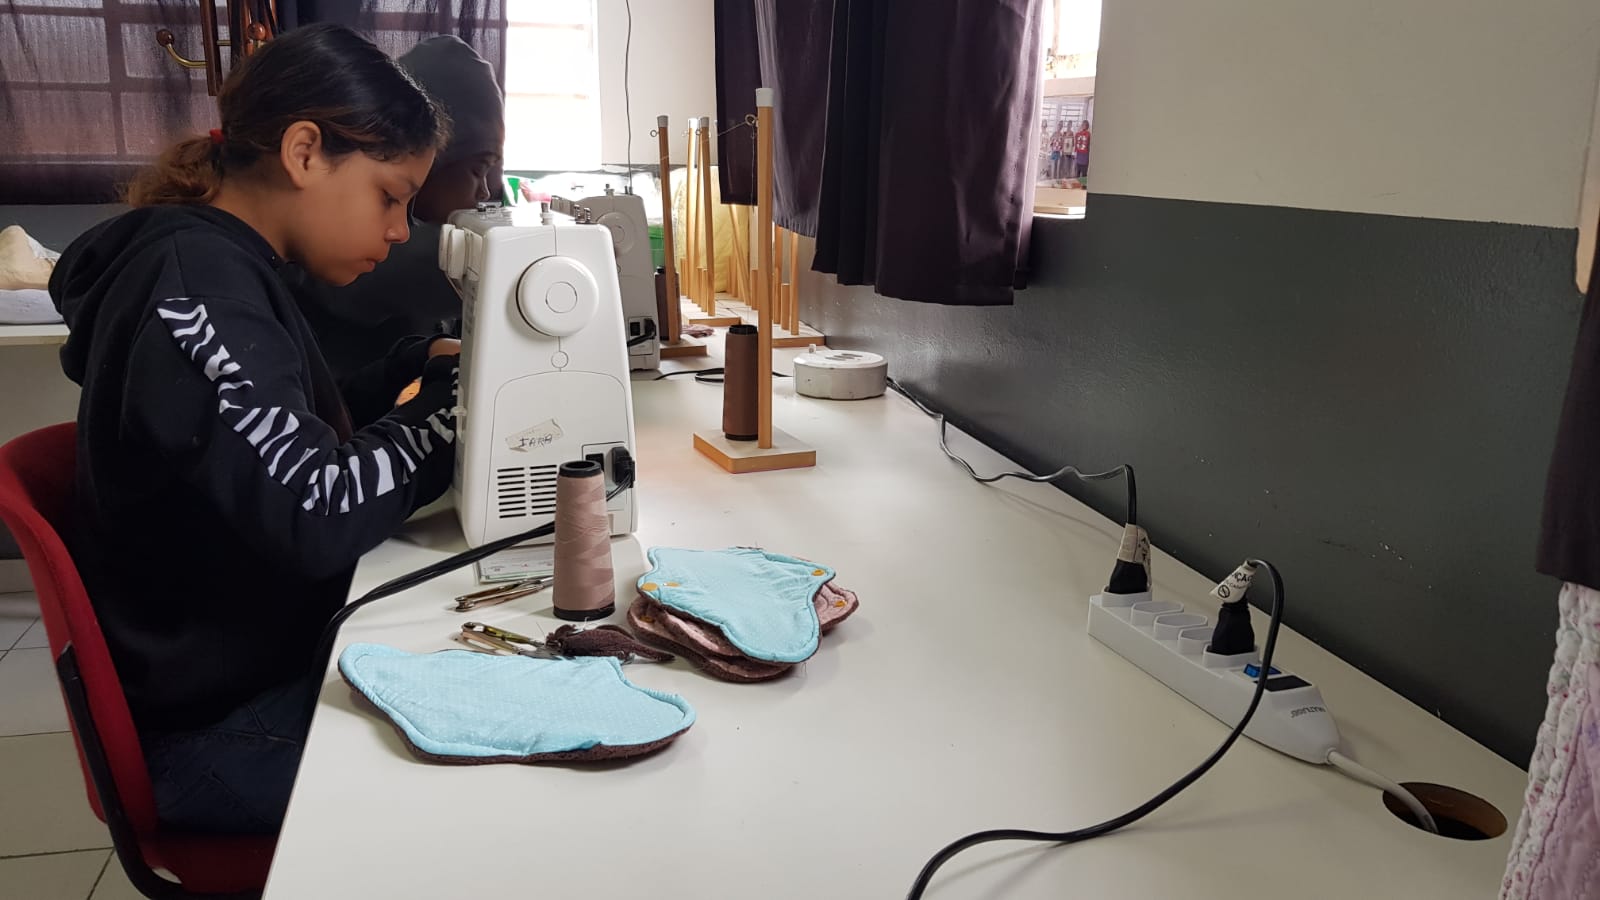 Duas meninas trabalham nos absorventes em máquinas de costura. Em cima da mesa já há quatro absorventes prontos, além de materiais de costura.